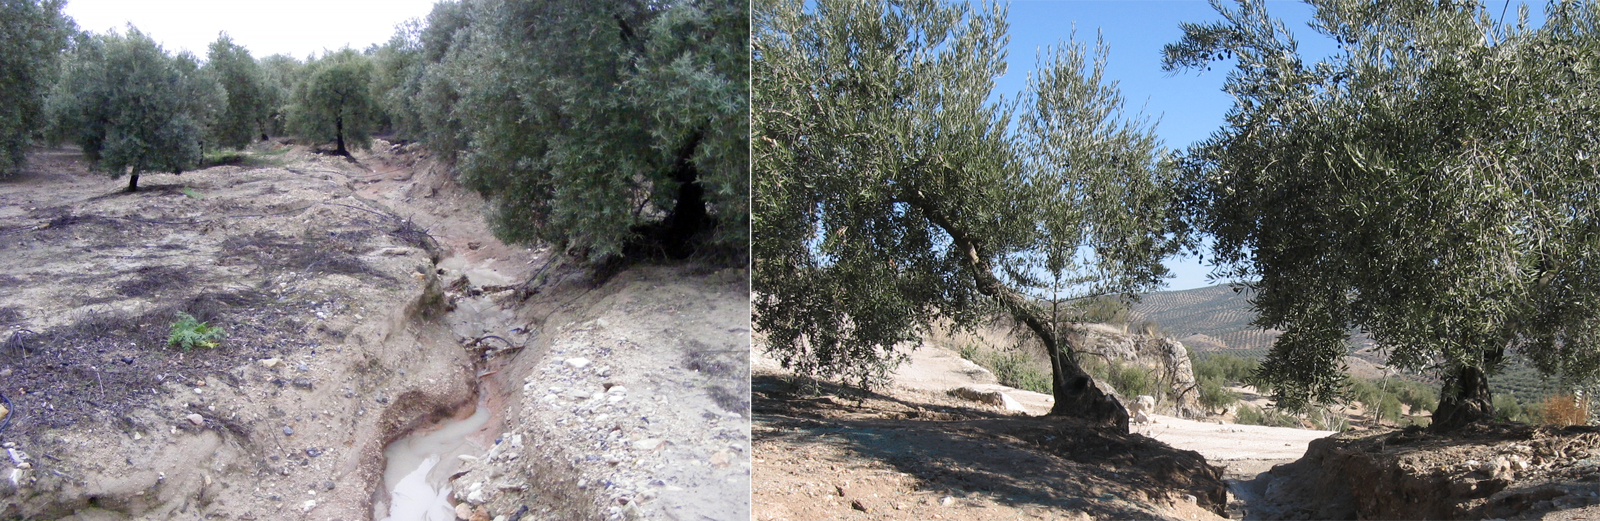 Figura 6. Elevadas prdidas de suelo registradas en olivar con generacin de crcavas profundas